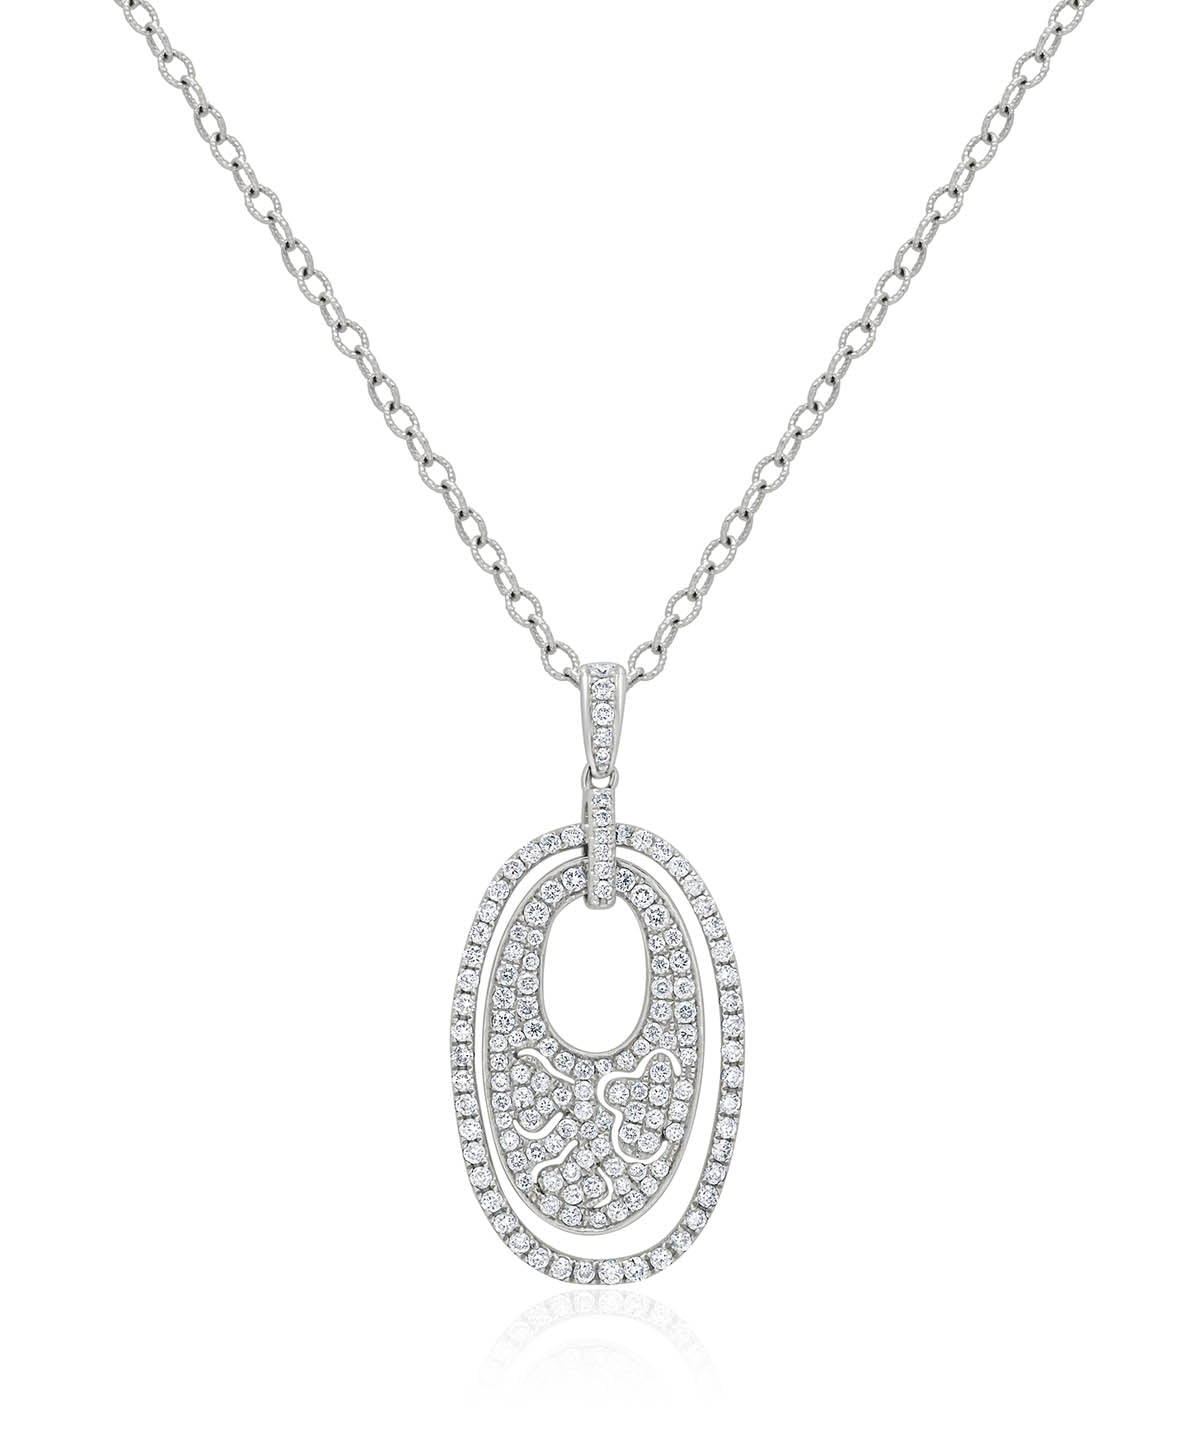 14K White Gold Diamond Pave Oval Pendant Necklace